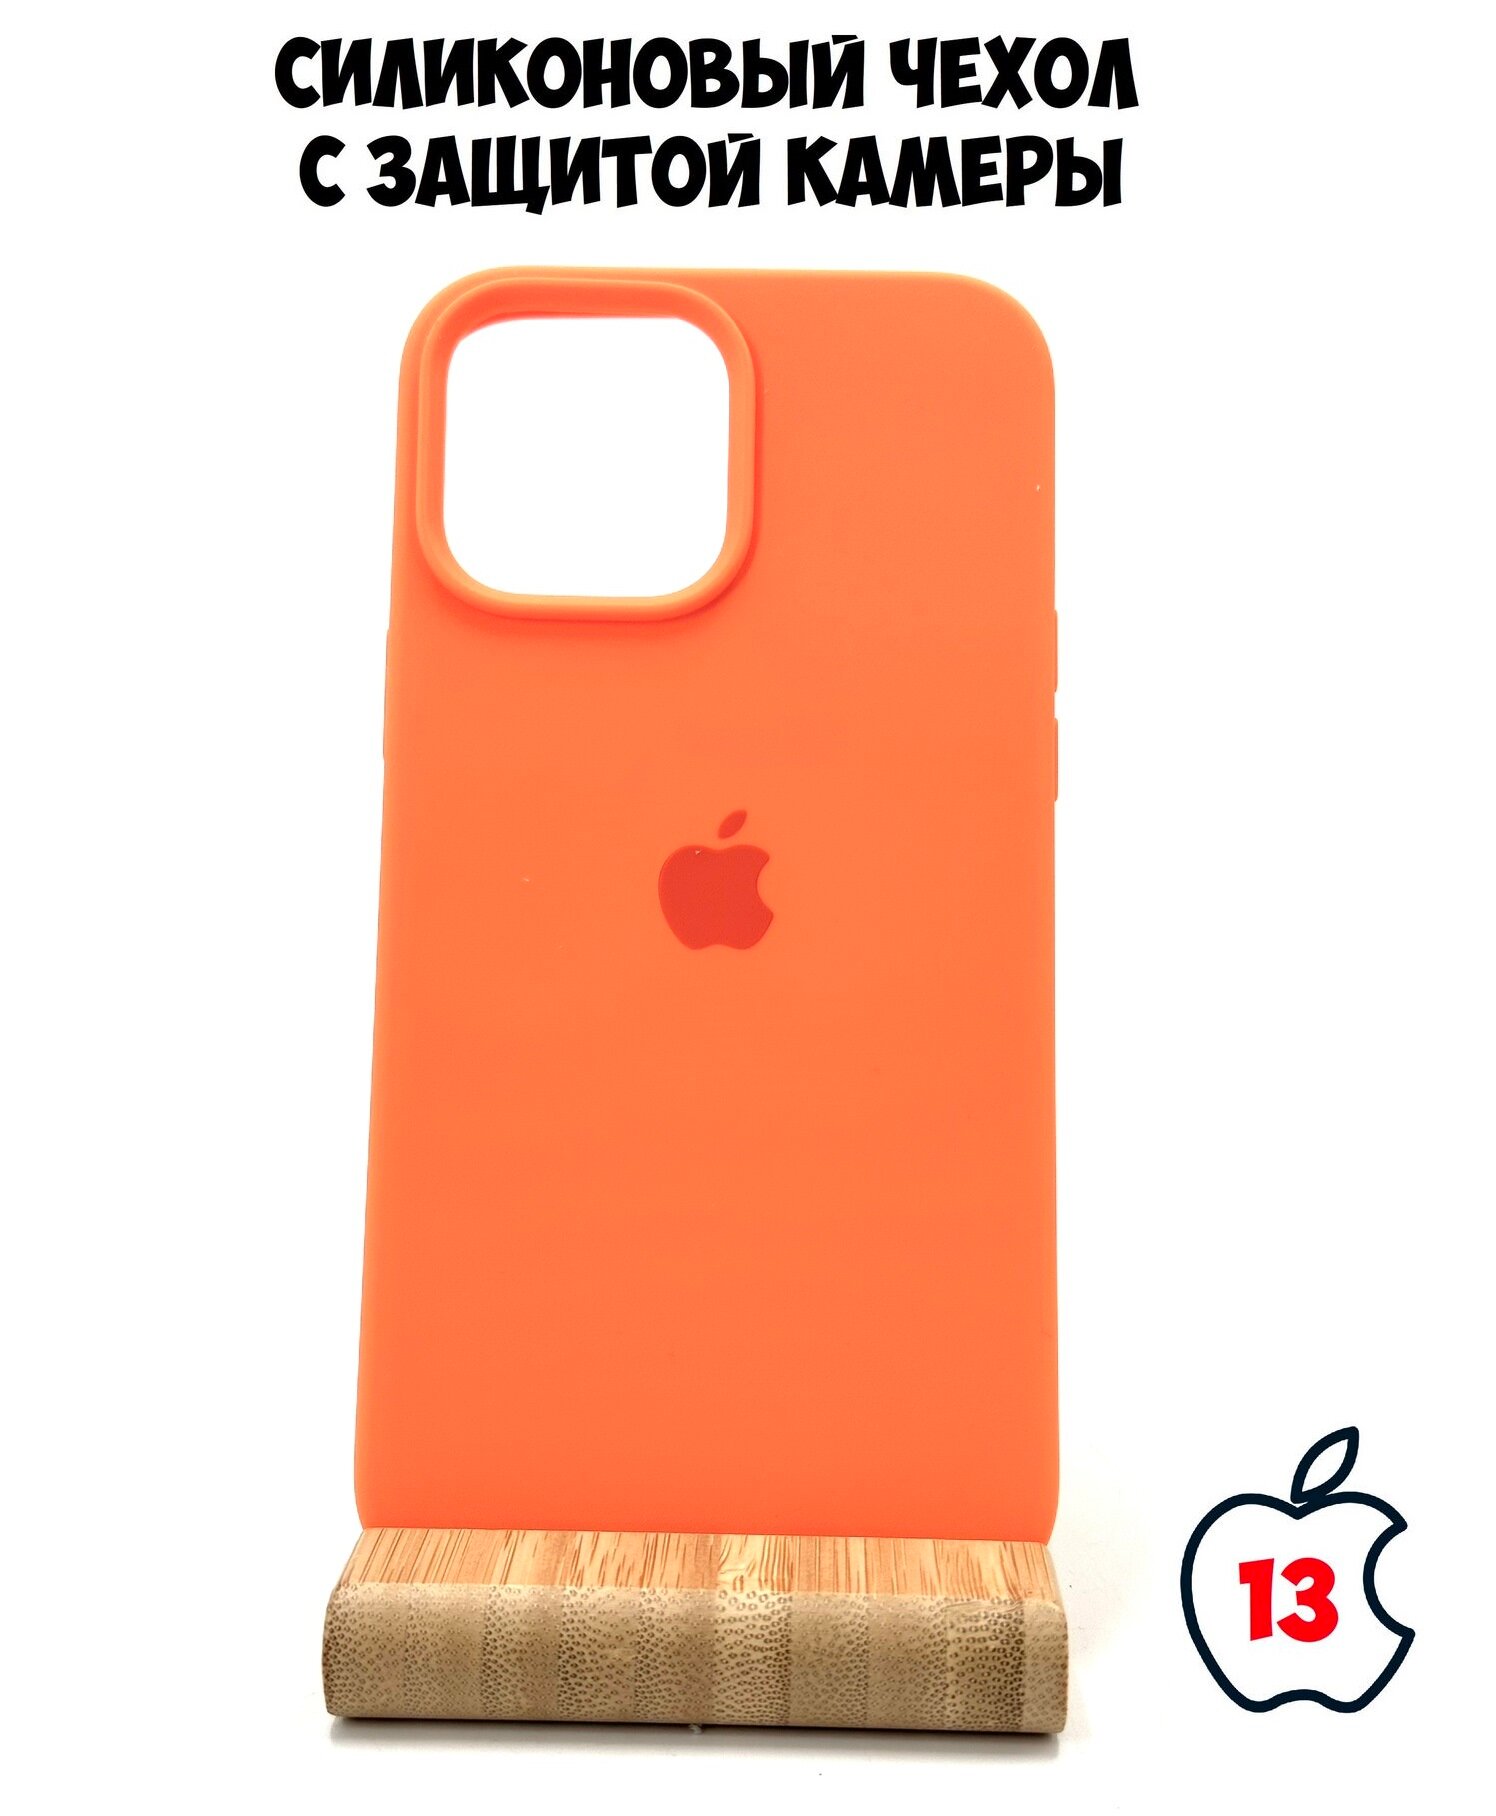 Силиконовый чехол для iPhone 13 с защитой камеры оранжевый